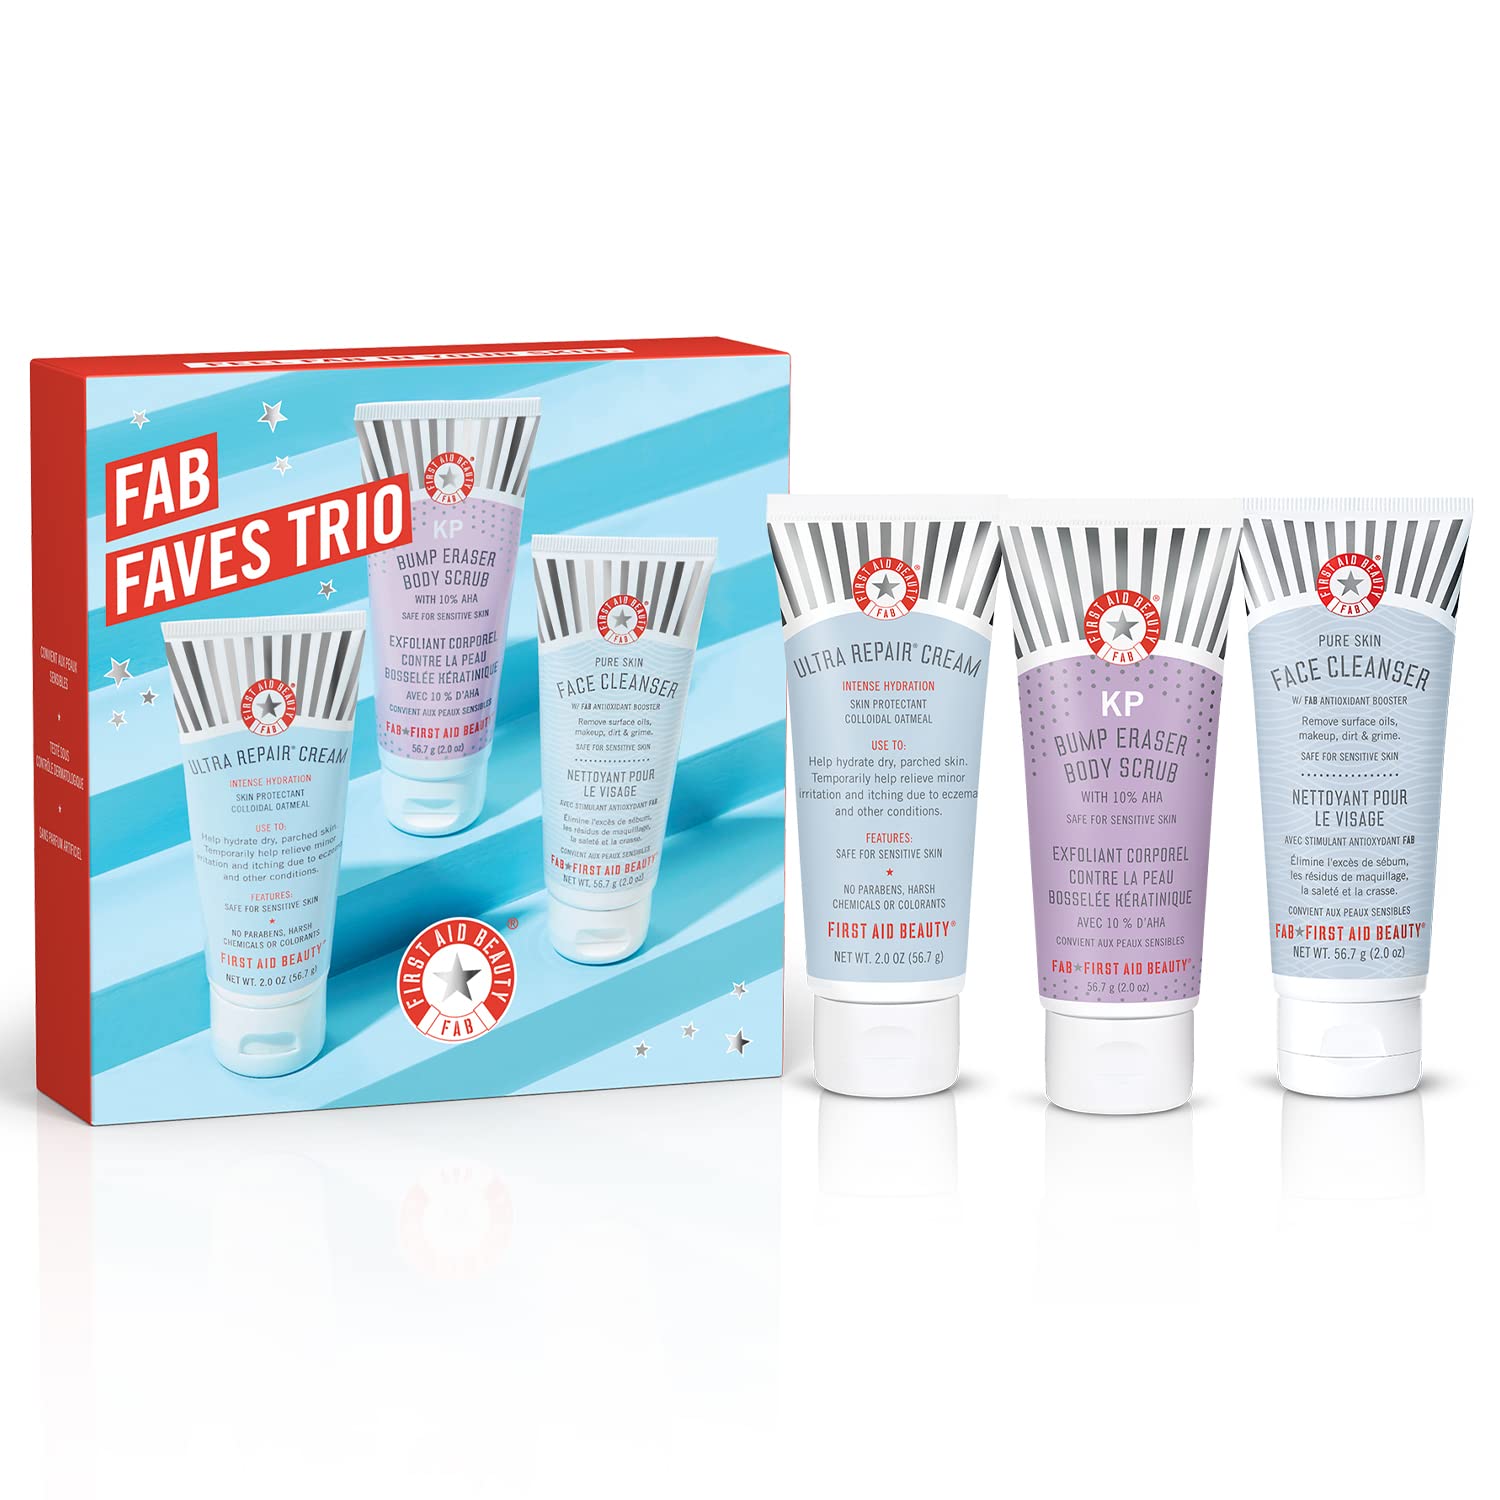 First Aid Beauty FAB Faves Trio: KP Bump Eraser Body Scrub with 10% AHA 2 oz, Ultra Repair Cream 2 oz & Pure Skin Face Cleanser 2 oz